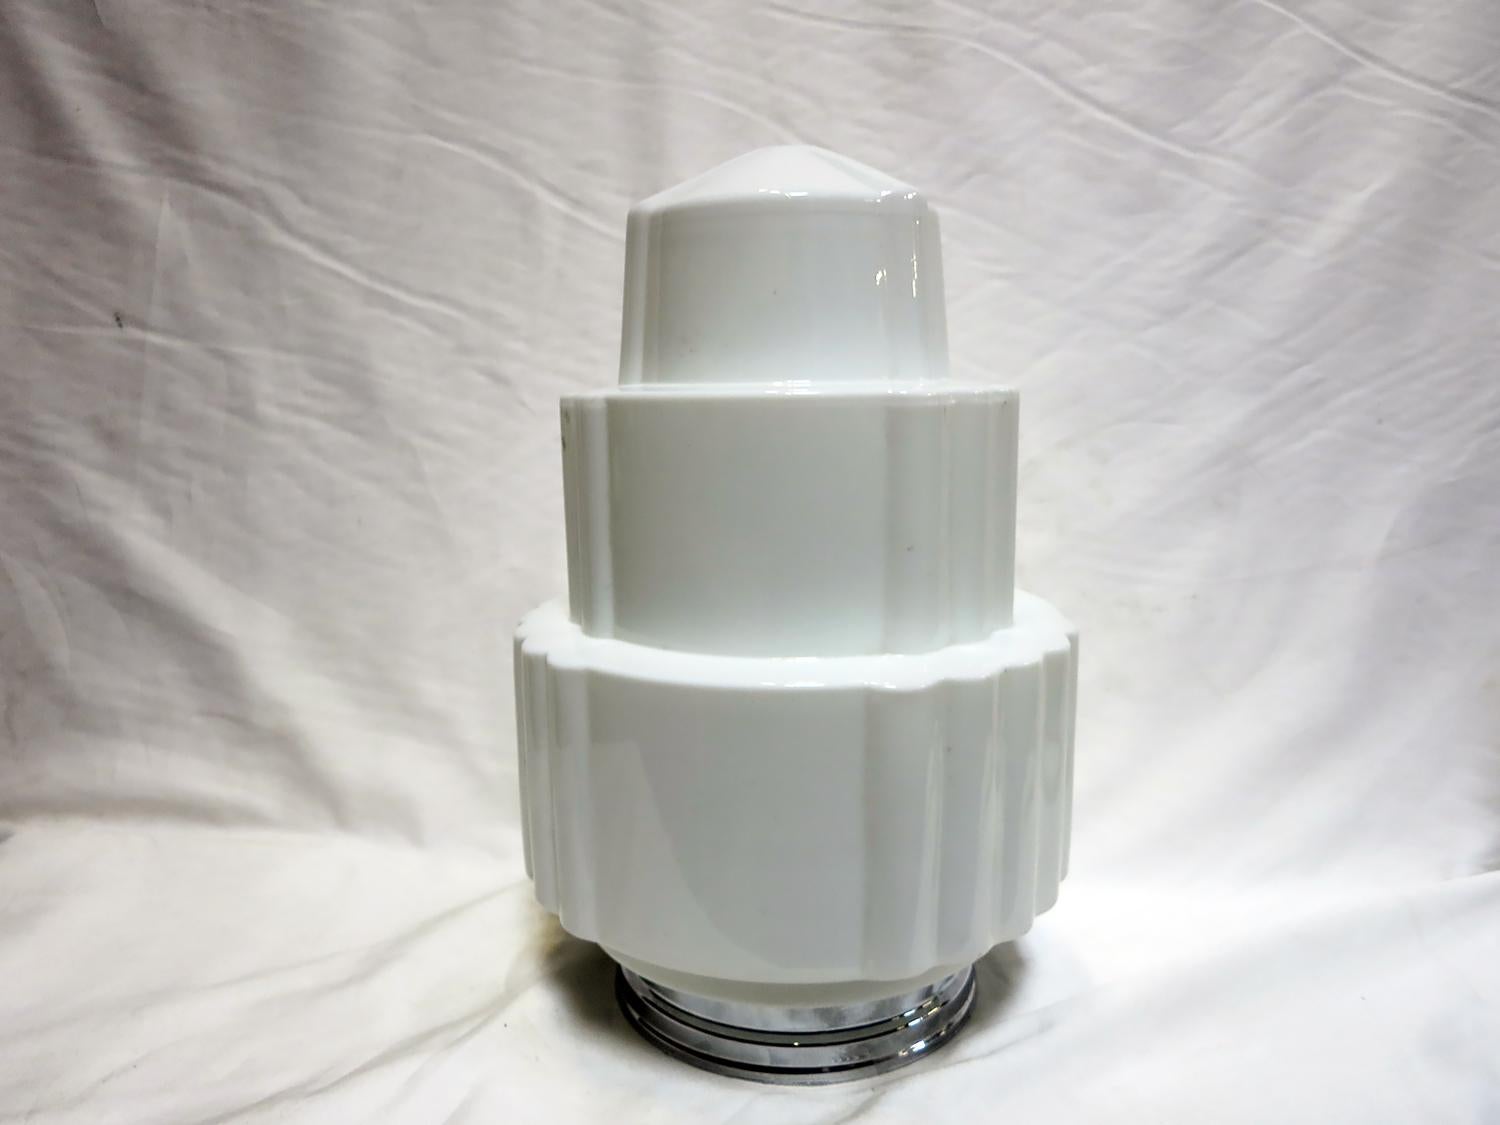 Globe en verre Art Déco en forme de gratte-ciel, en verre laiteux blanc, avec un design alternant trois niveaux lisses et festonnés. Disponible avec un nouveau raccord de 6